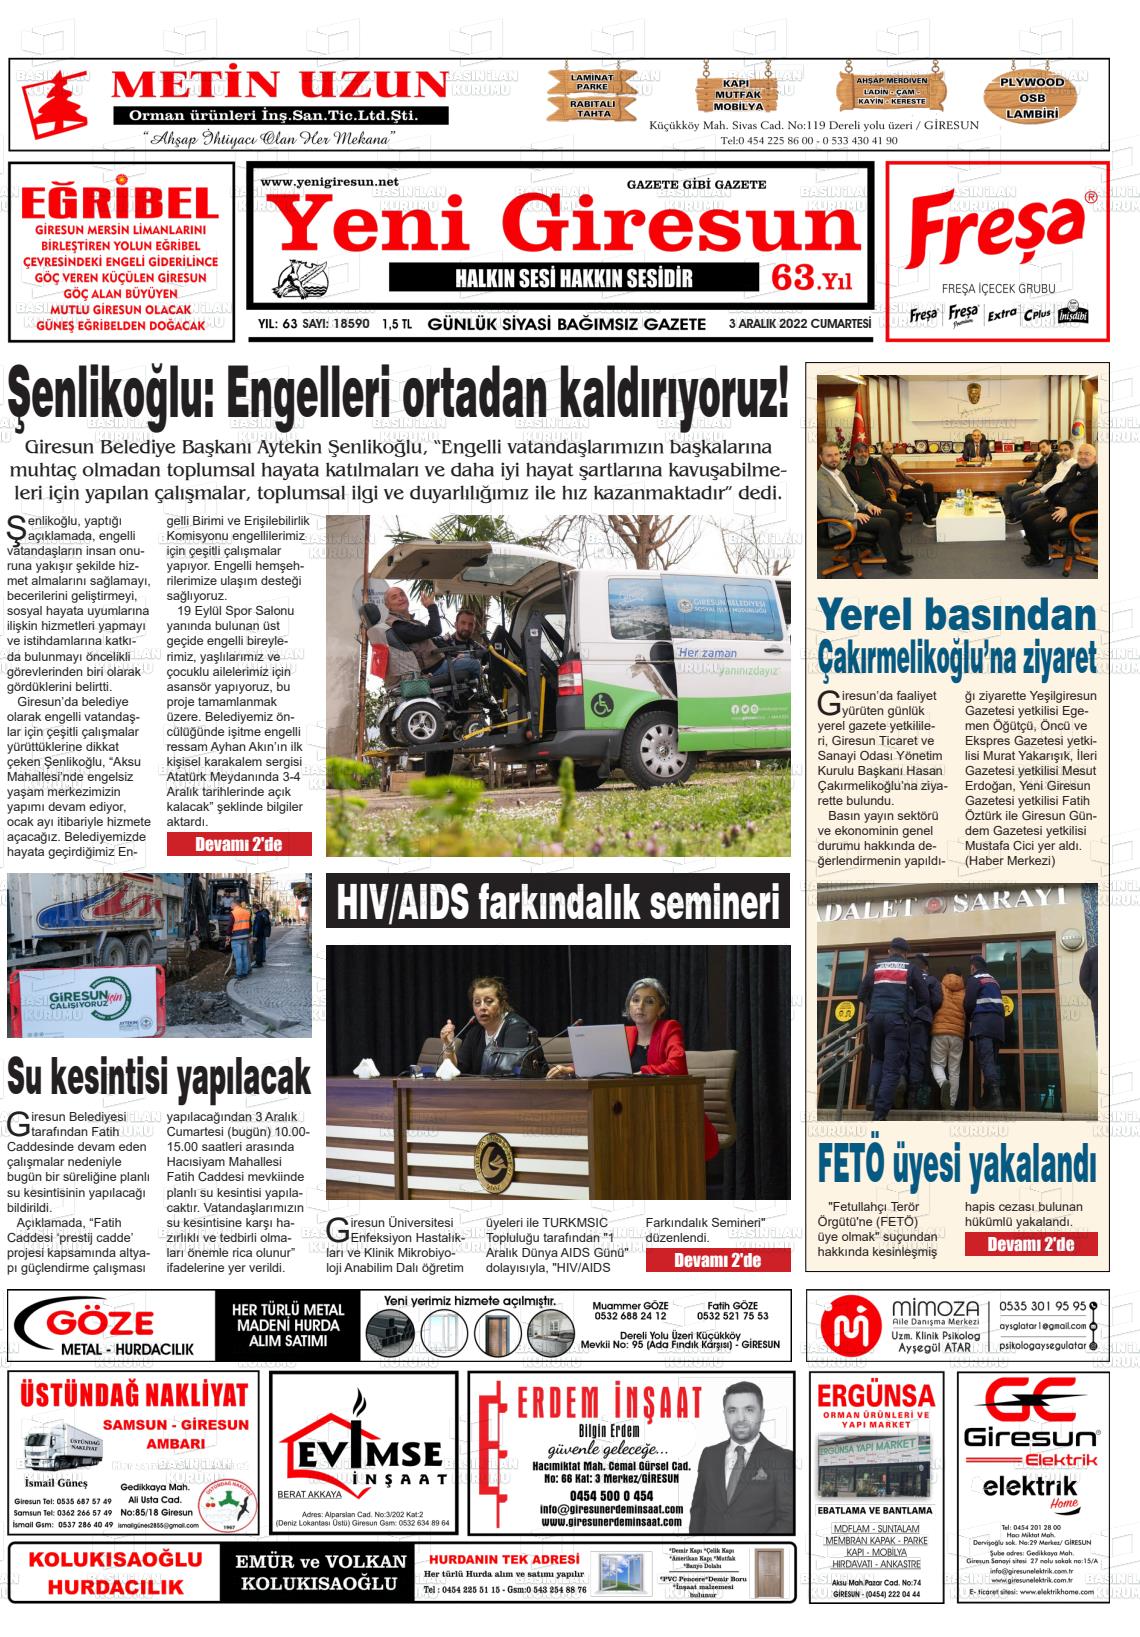 03 Aralık 2022 Yeni Giresun Gazete Manşeti